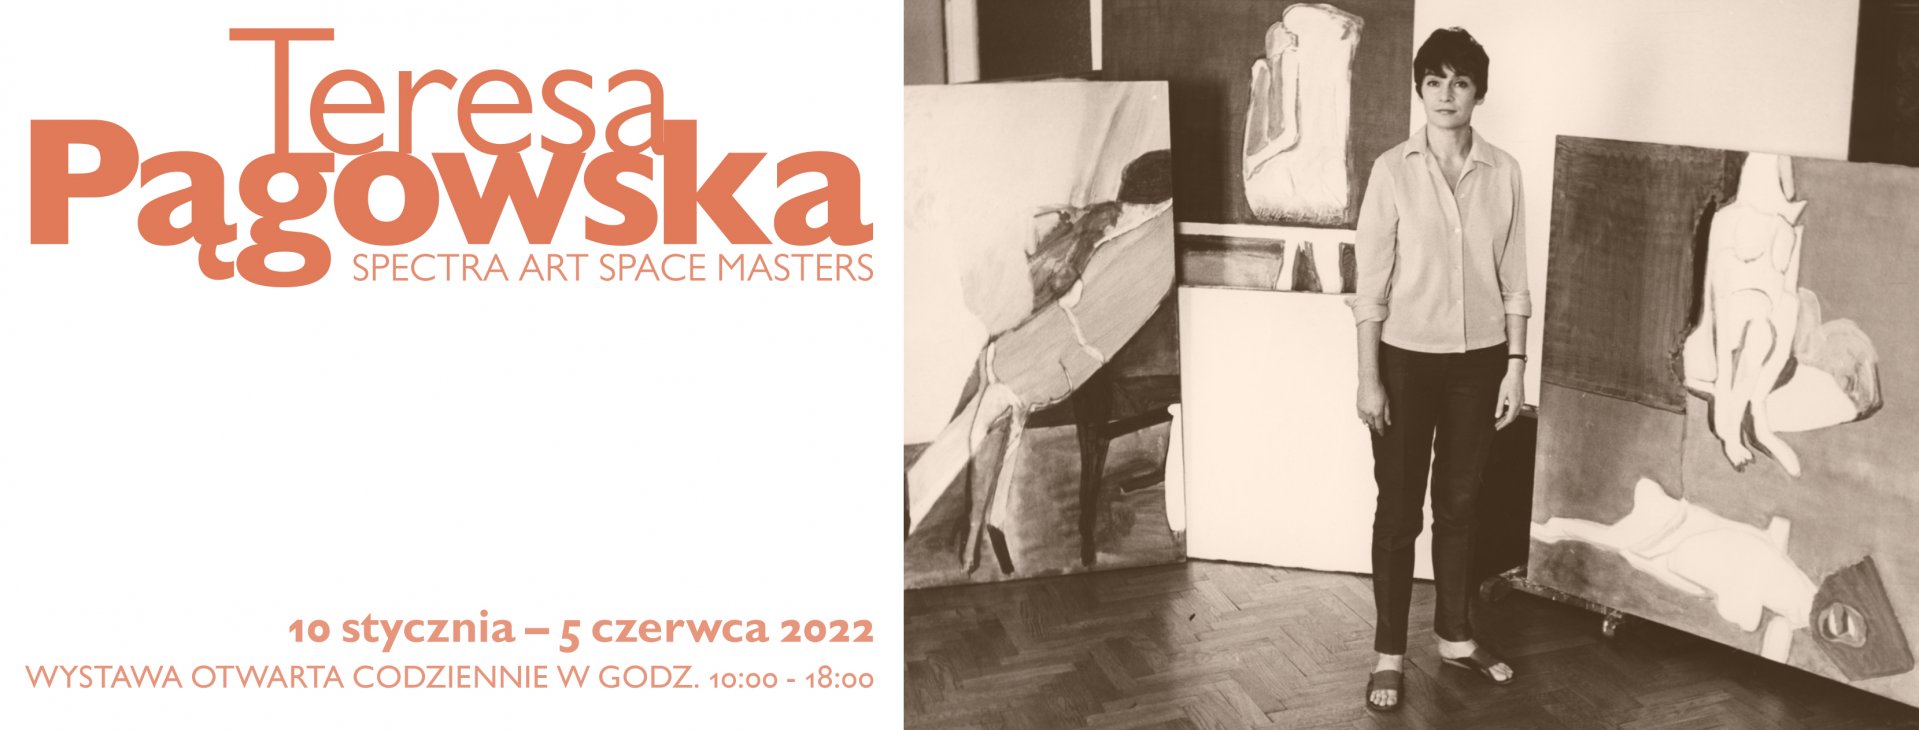 Teresa Pągowska | Spectra Art Space MASTERS
